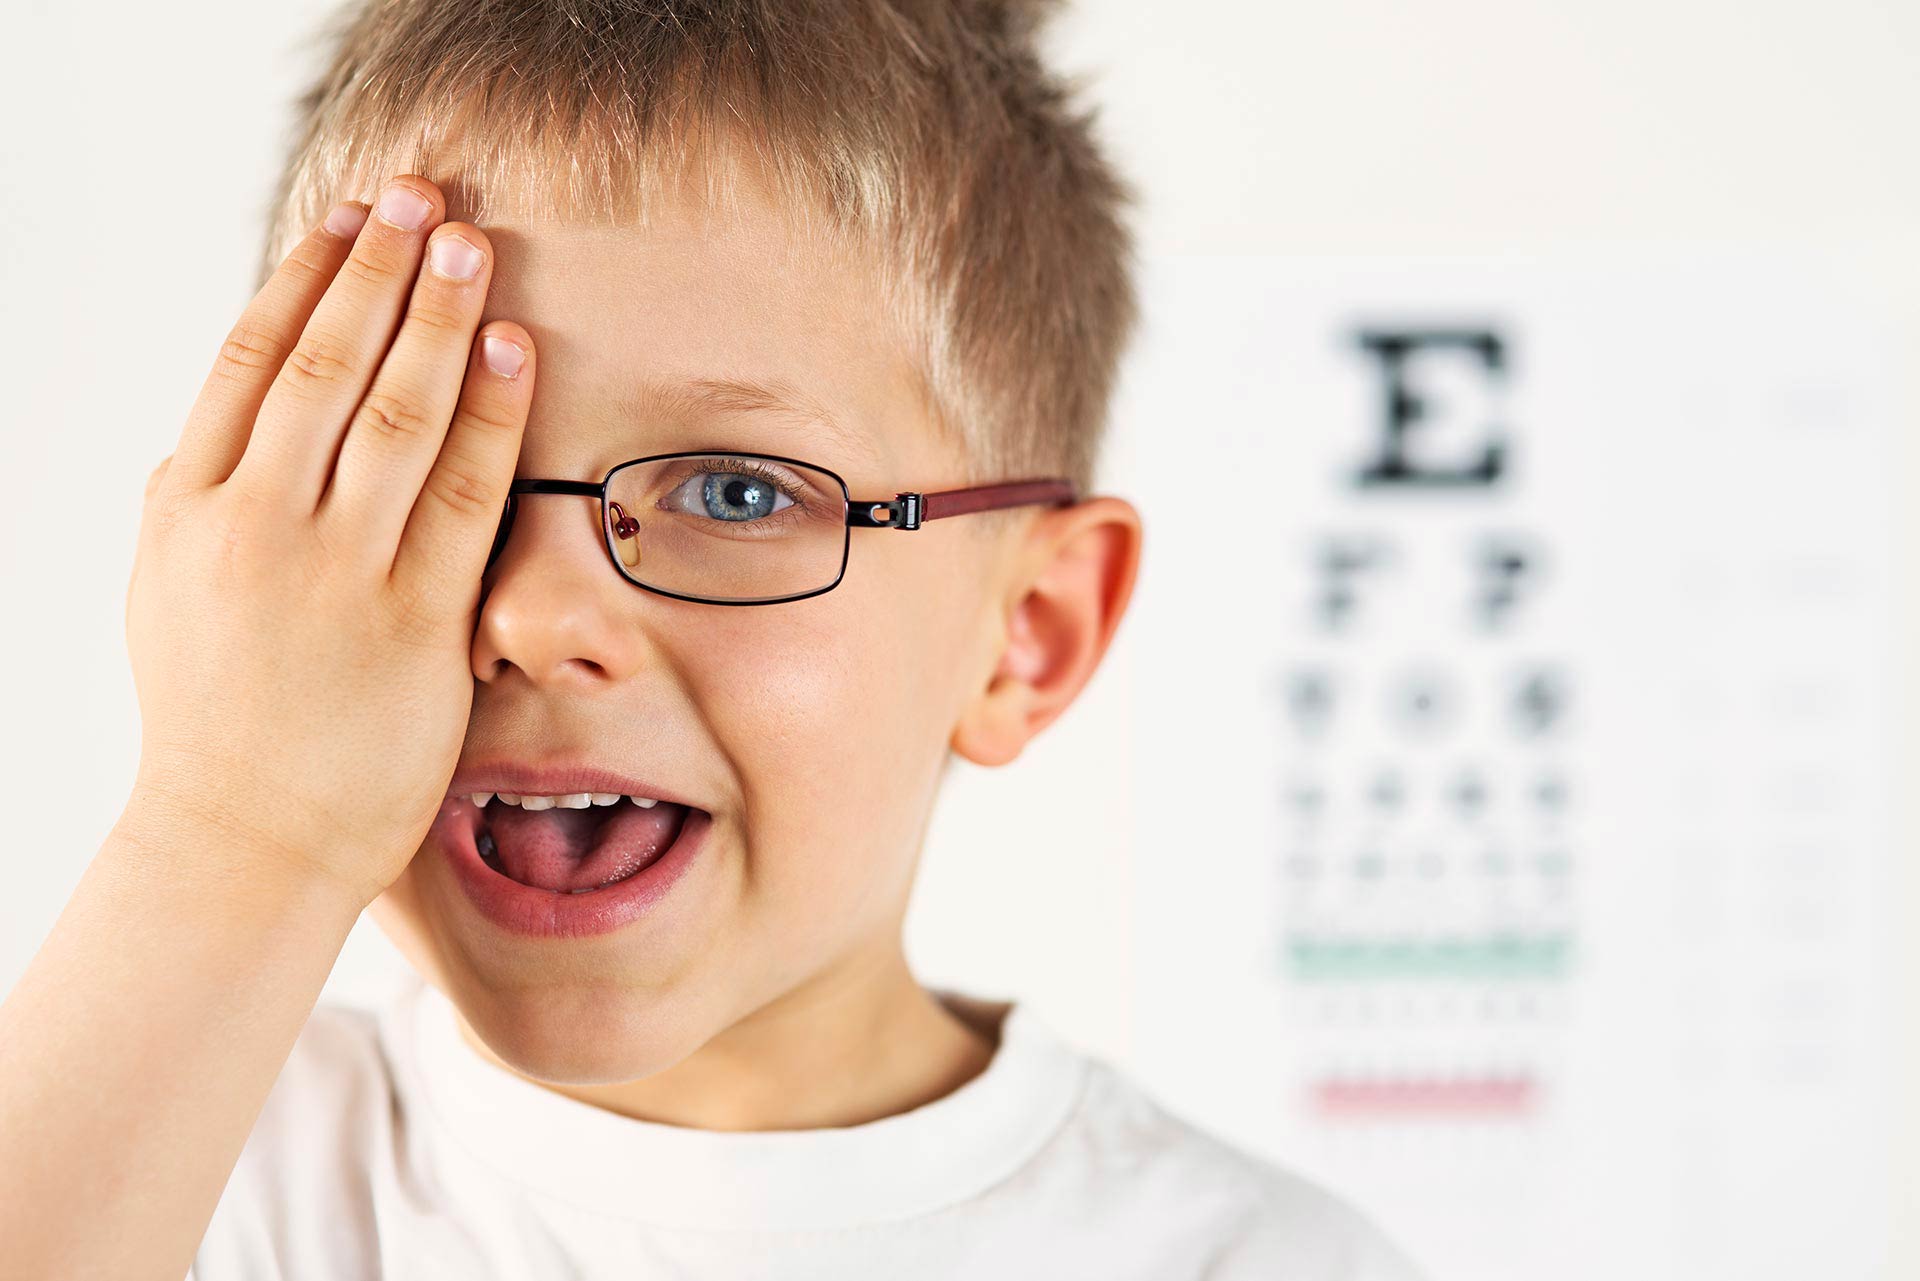 Campagna di prevenzione nelle scuole per la salute della vista